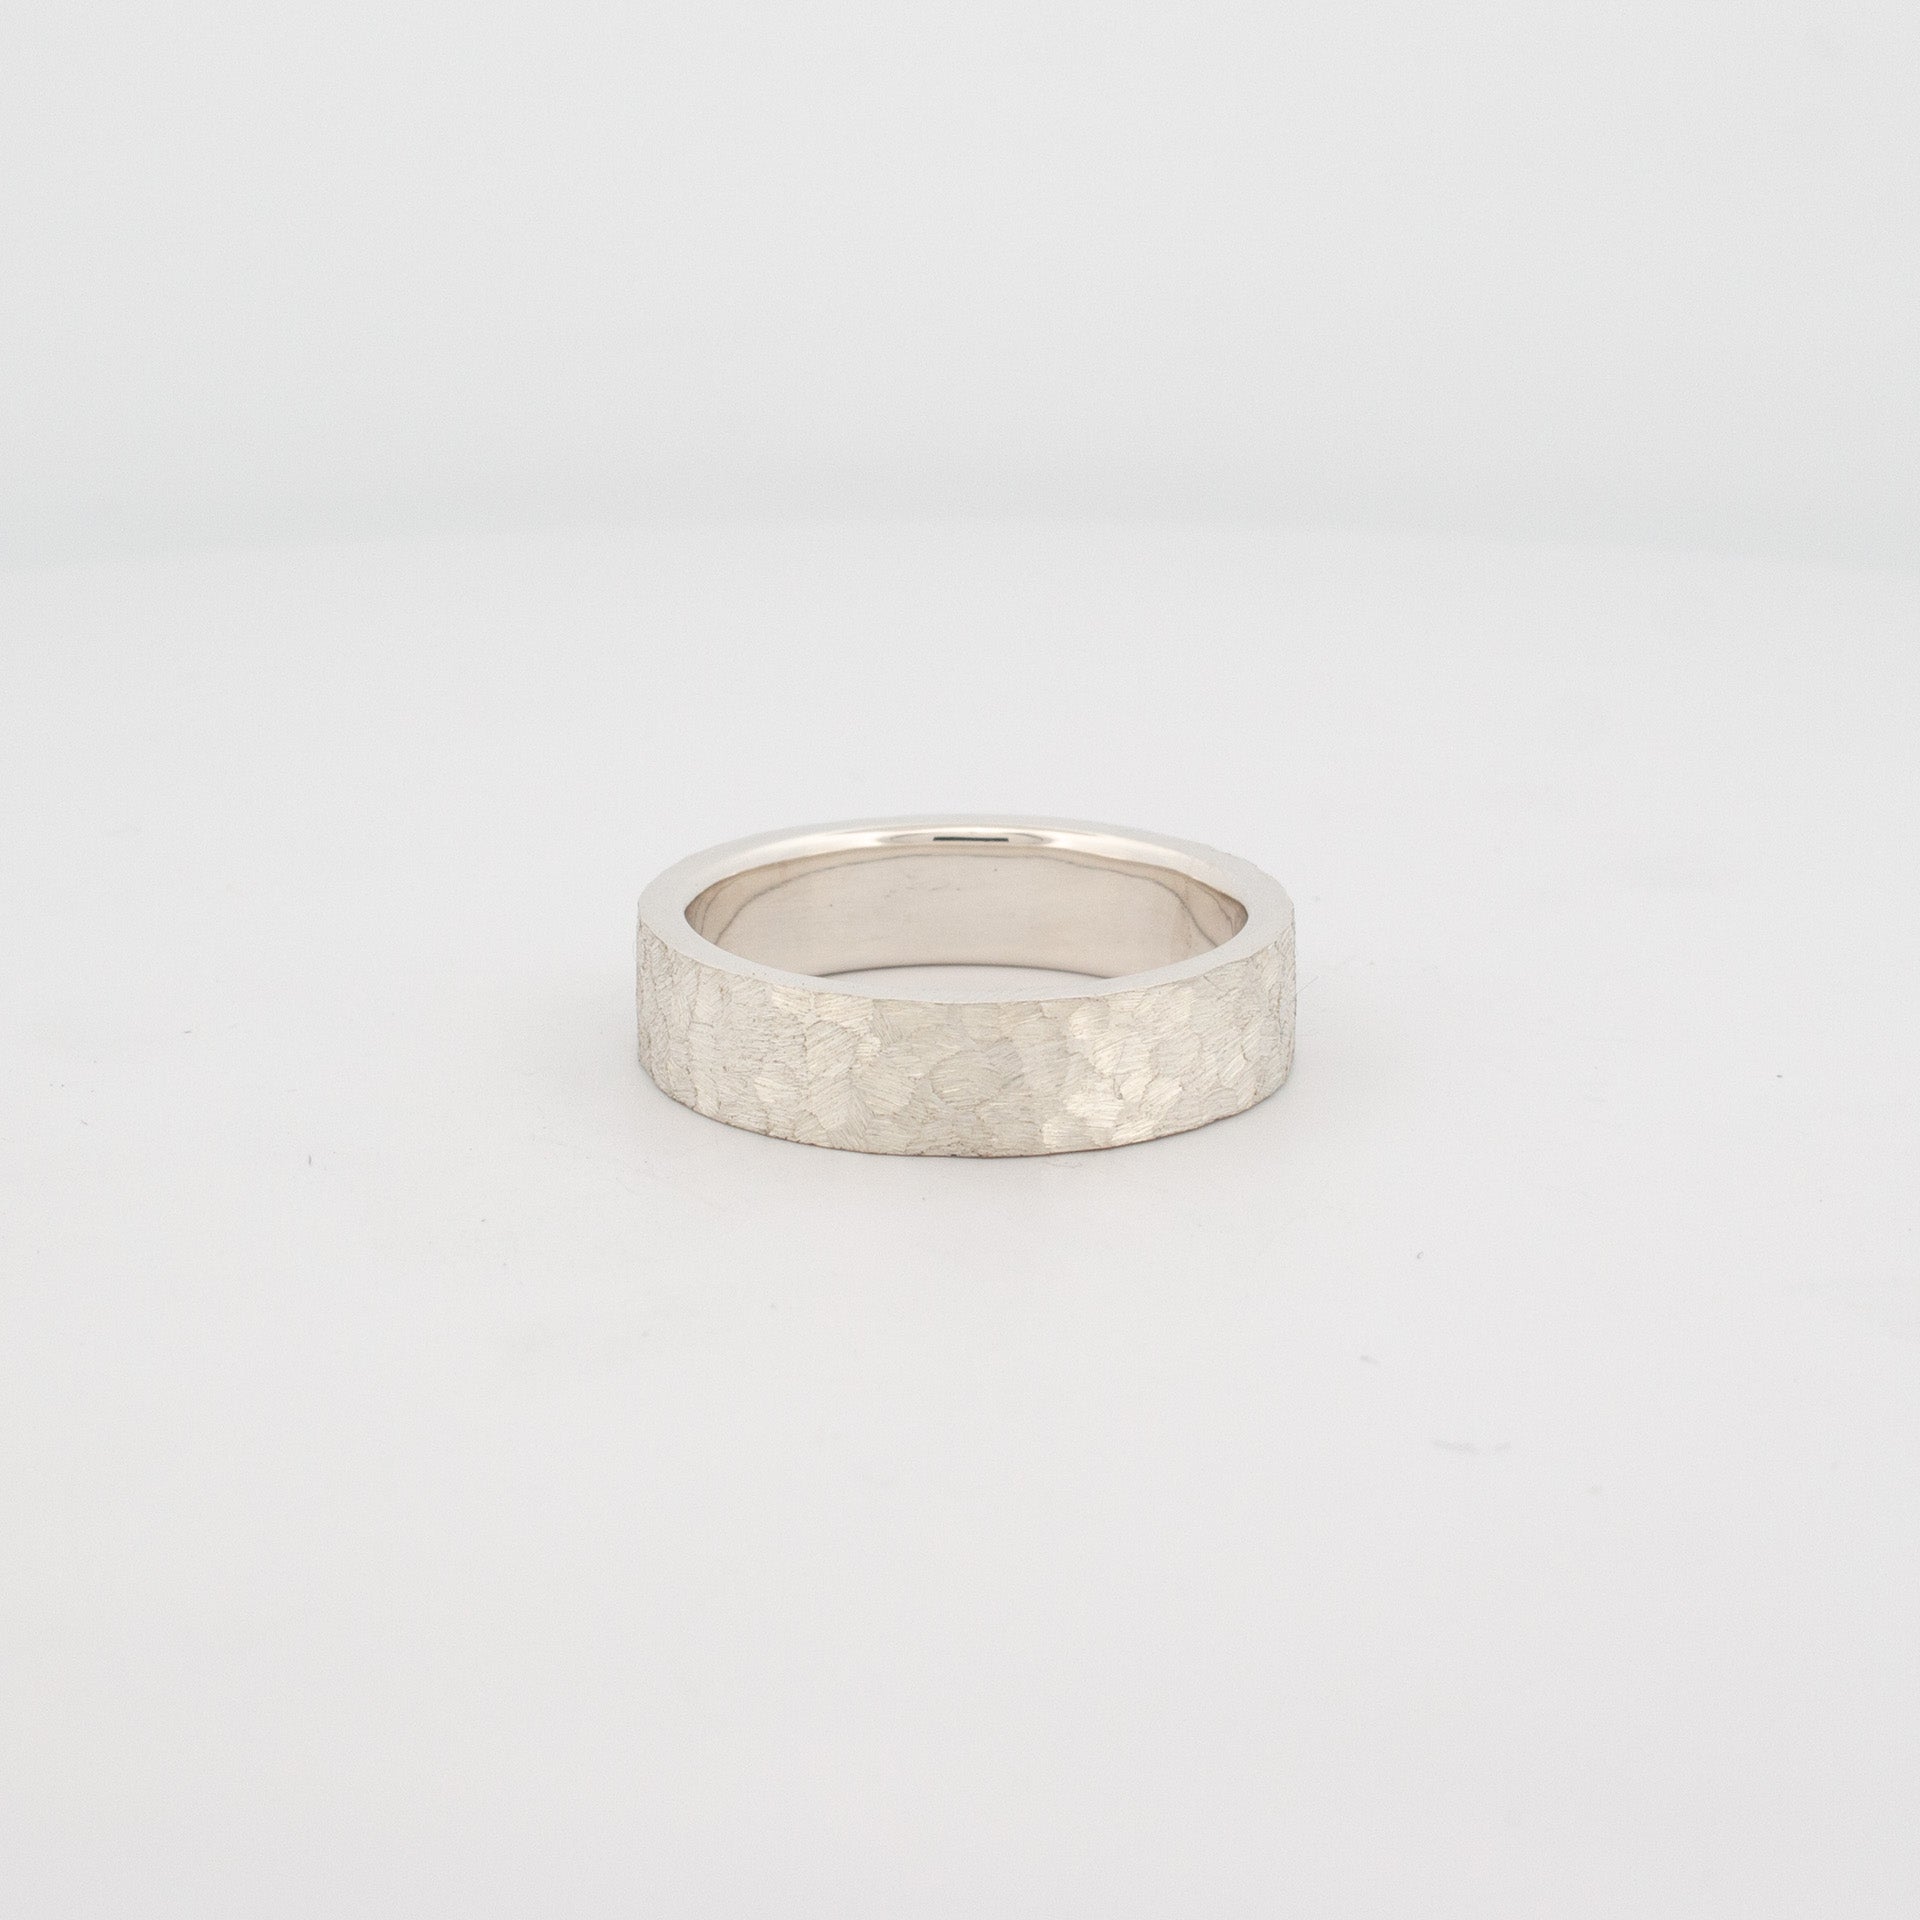 Silver Cobblestone ring